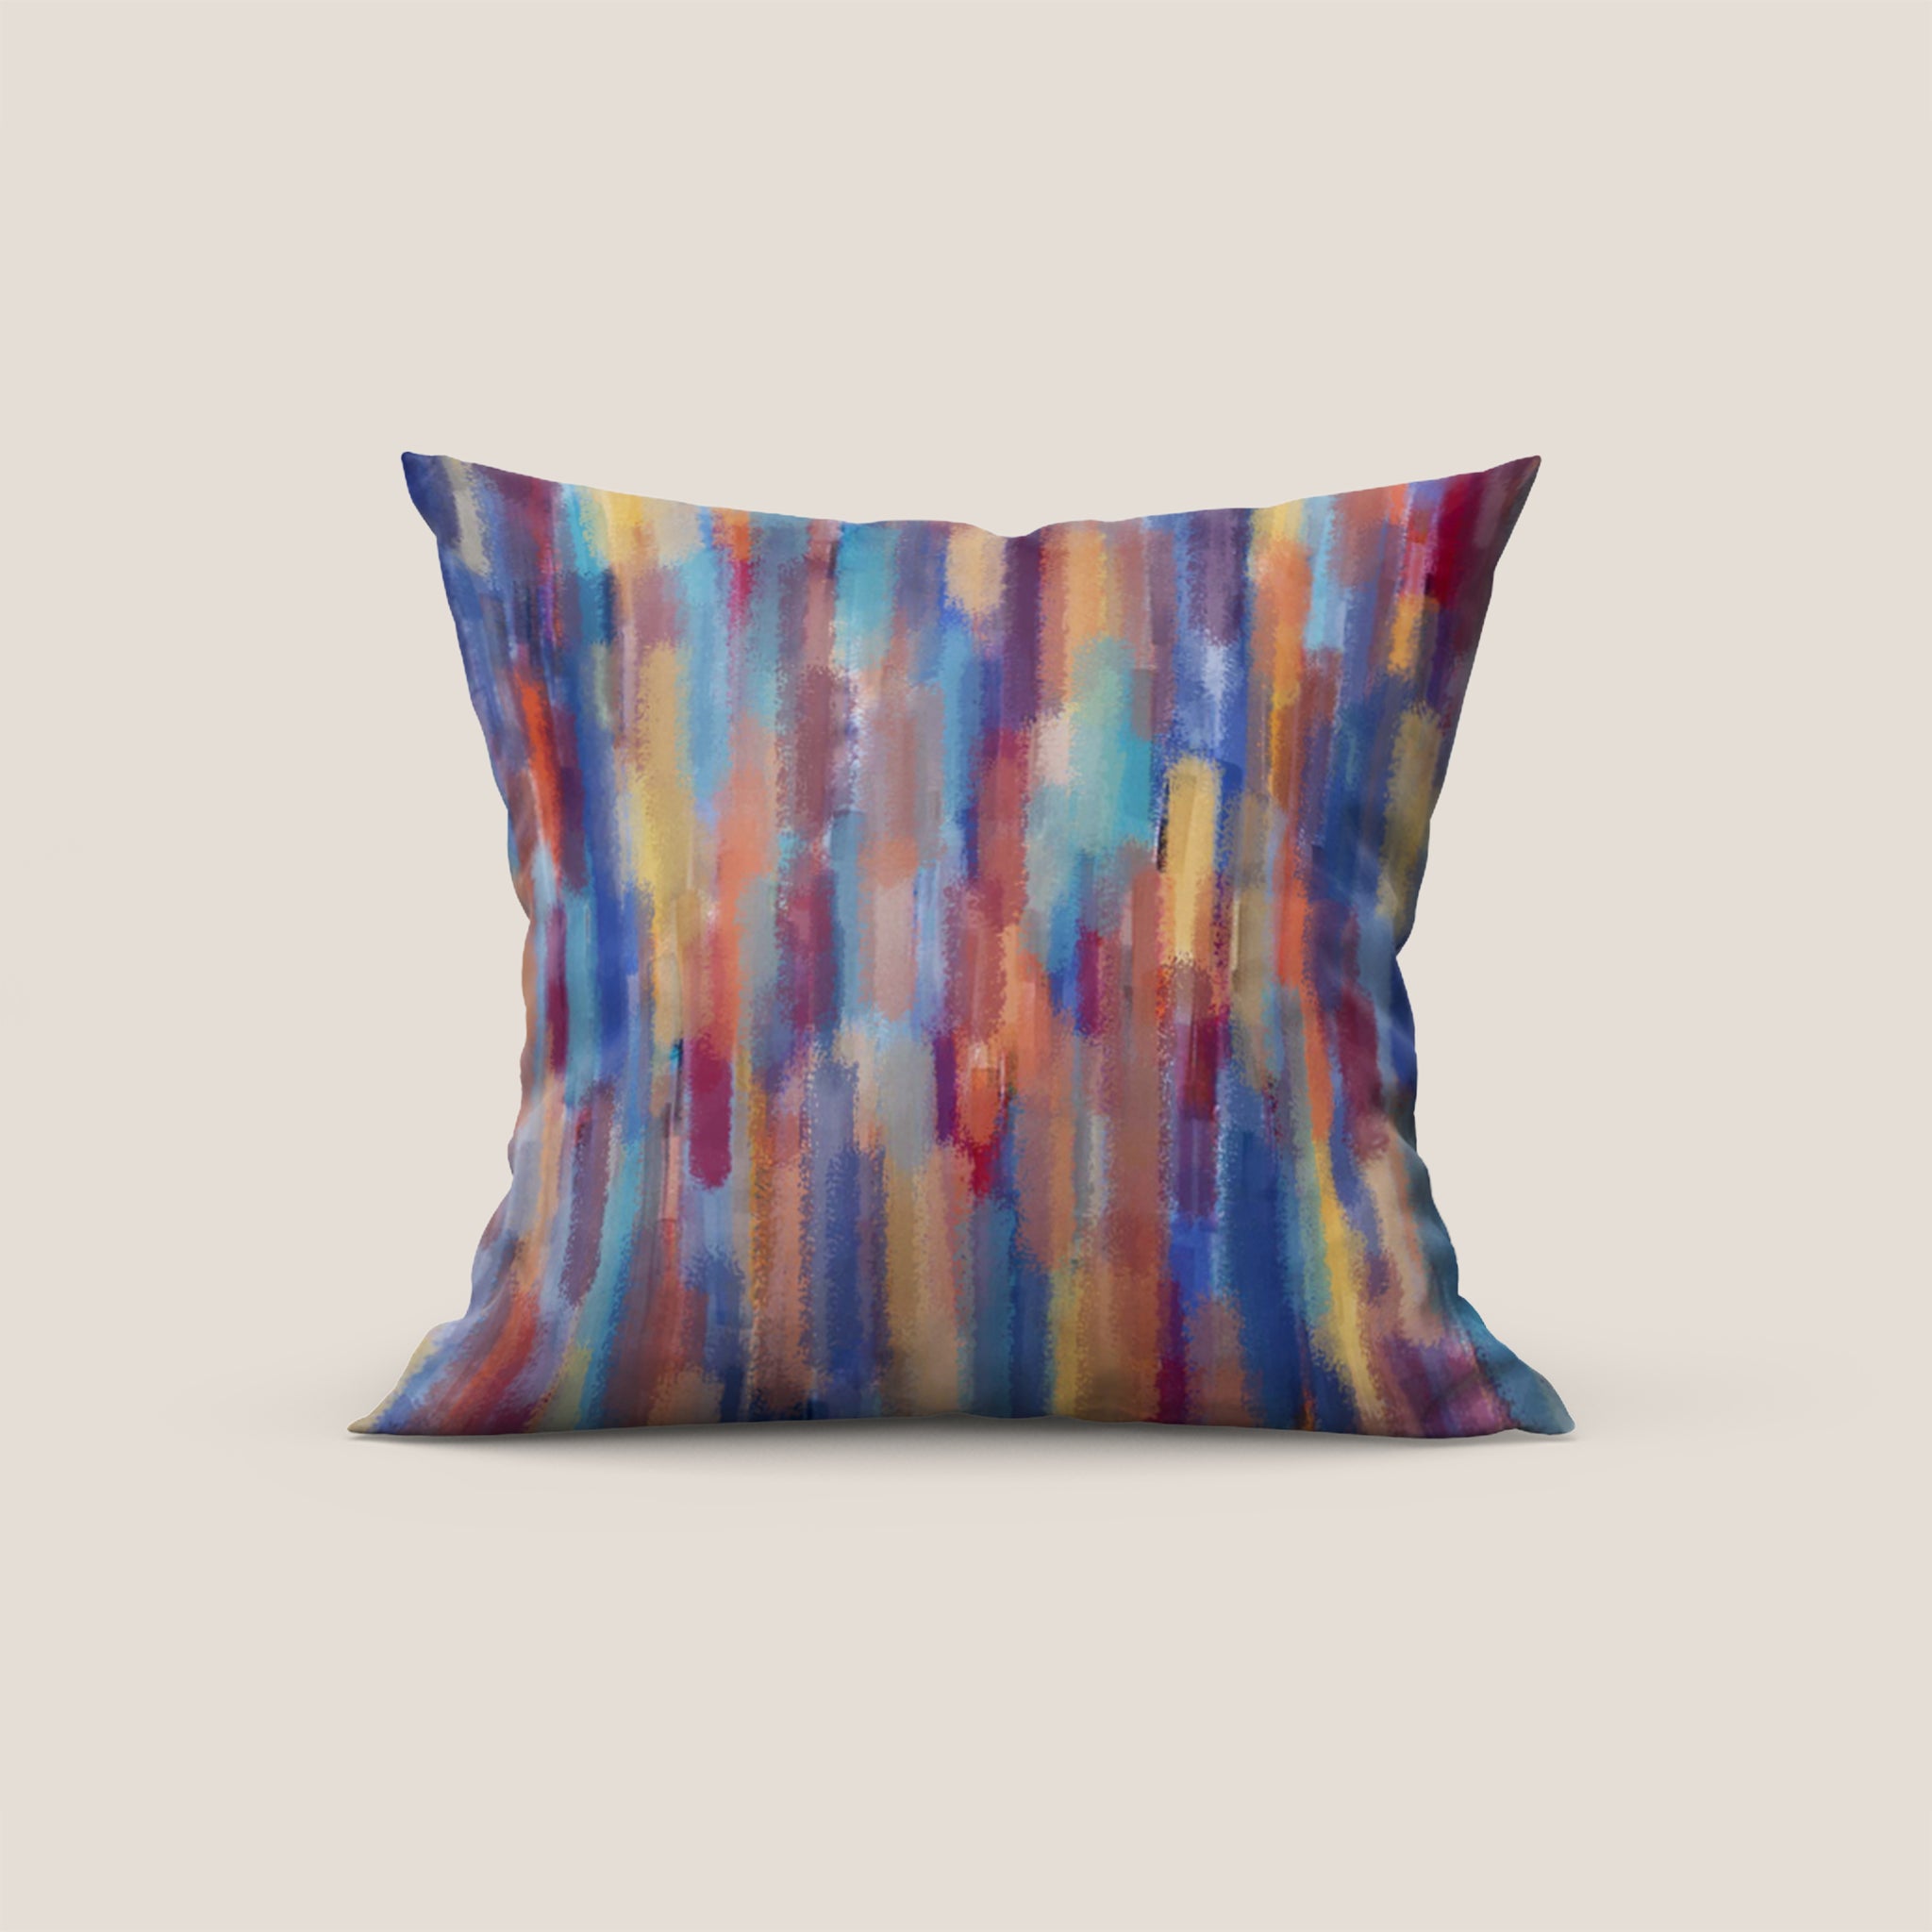 Brush-line collezione cuscini a fantasie multicolor in velluto impermeabile